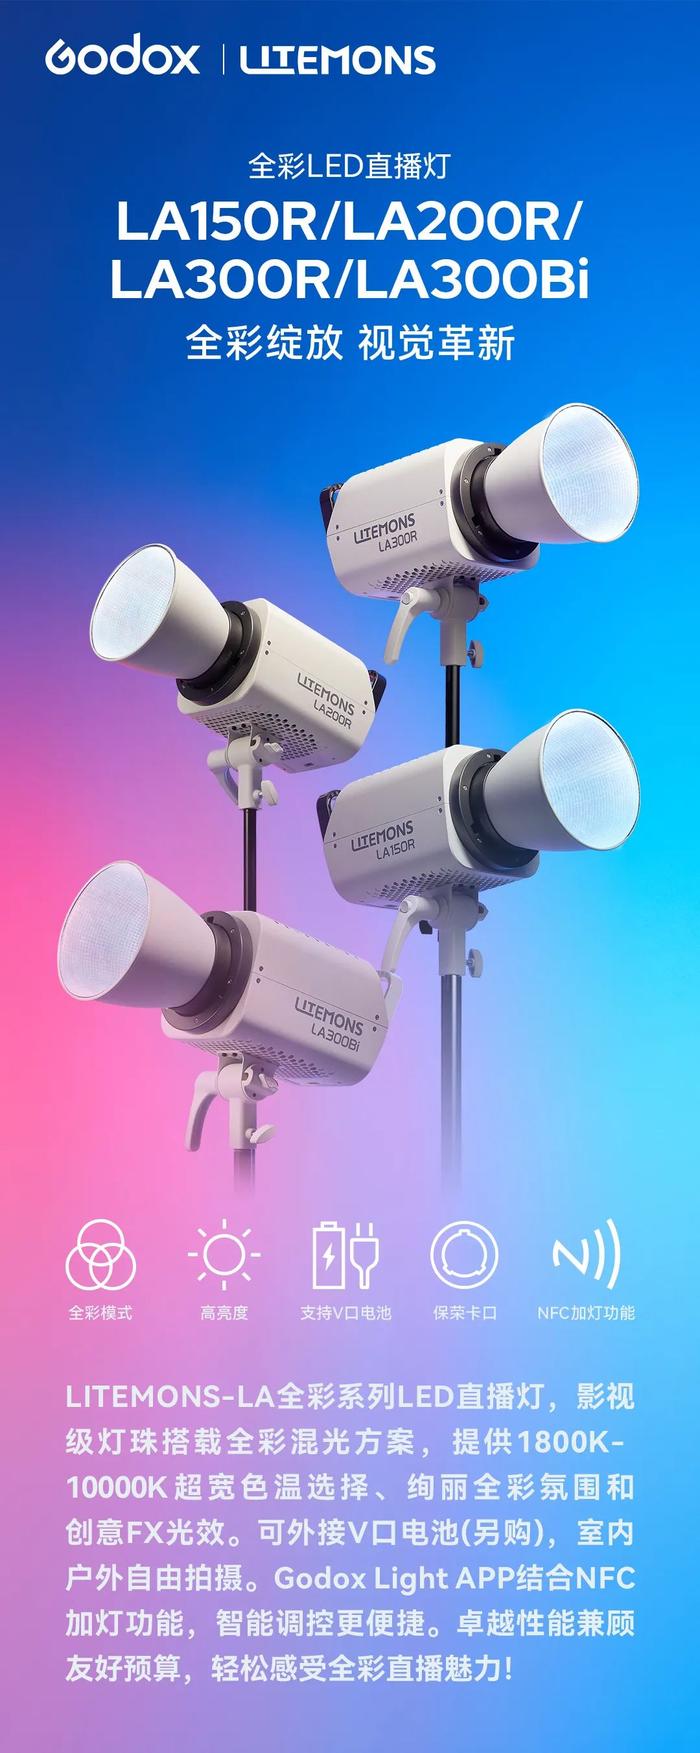 神牛 LITEMONS-LA 系列 LED 直播灯发布：RGB 全彩/ 双色温可选、支持 V 口电池，2080 元起